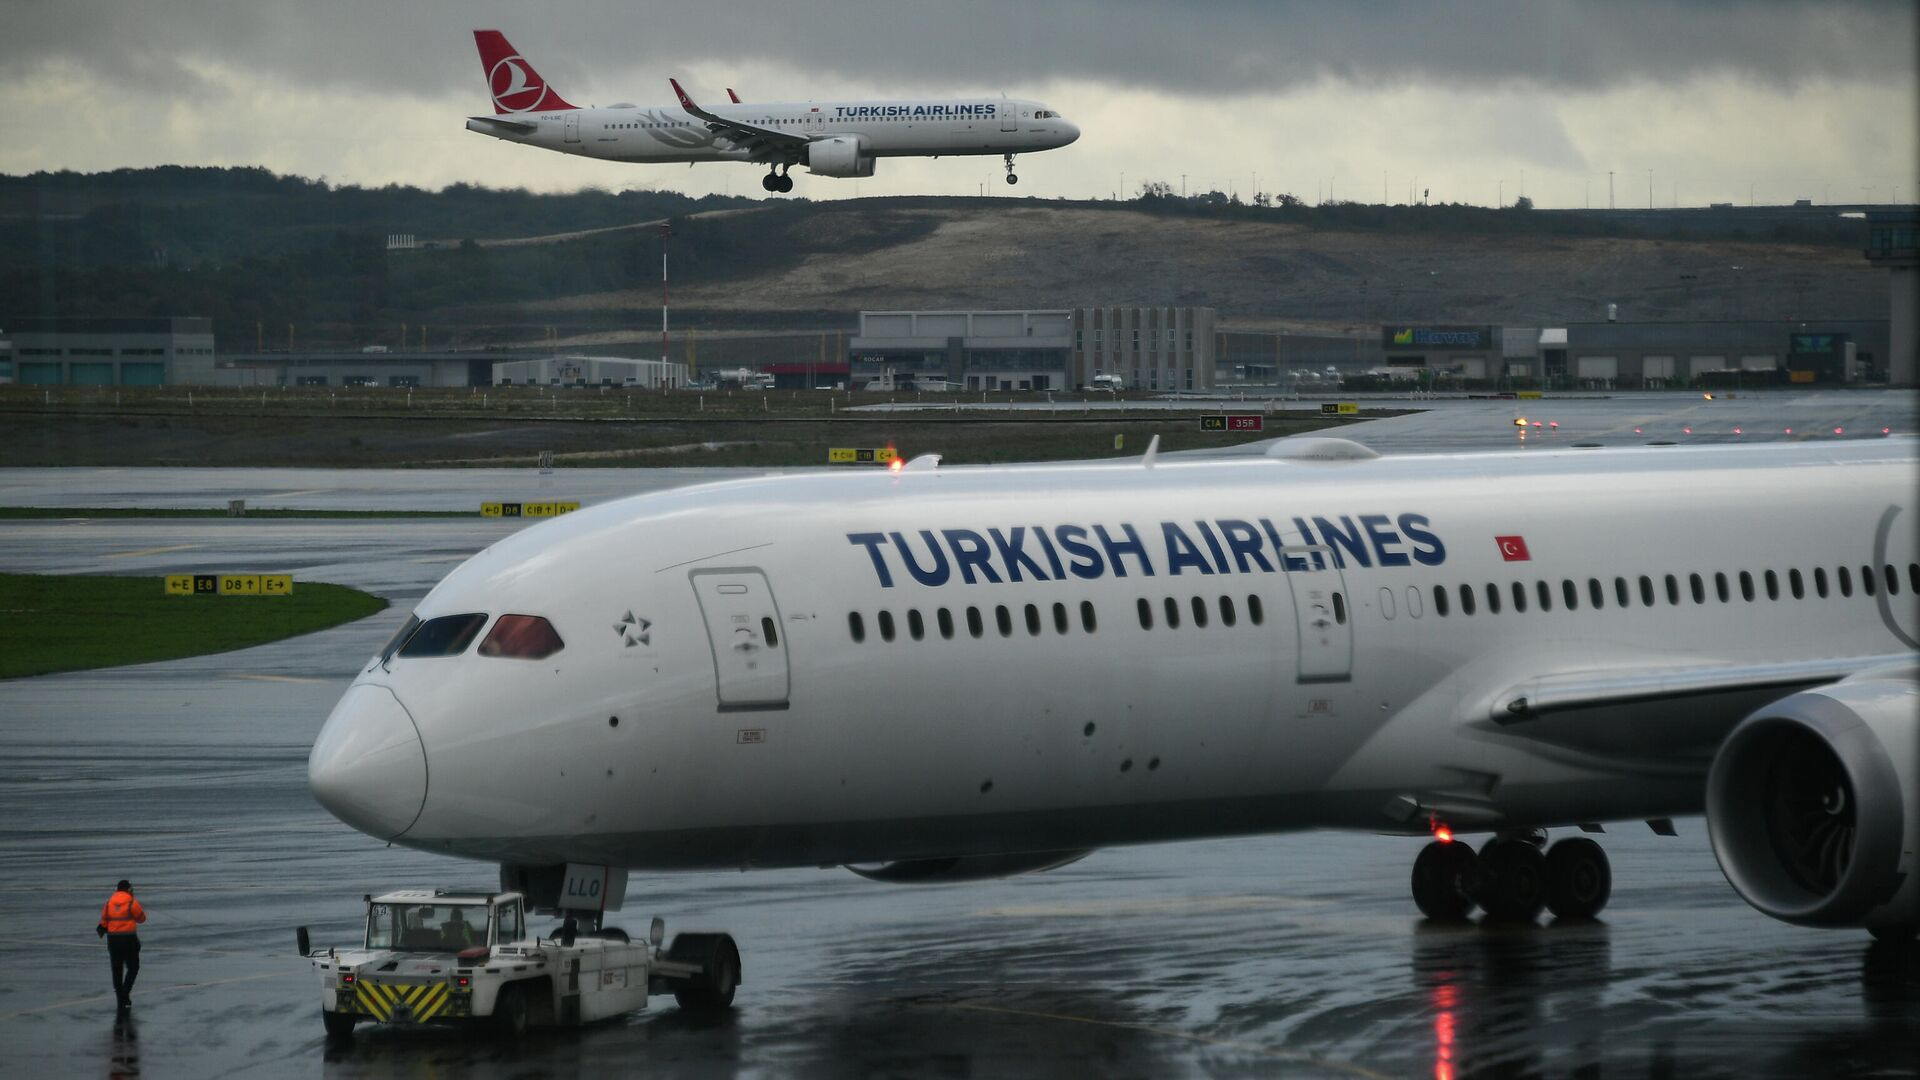 Ռուսաստանի դեսպանատունը նոտա է հղել Թուրքիայի ԱԳՆ-ին՝ թուրքական ավիաուղիների հետ կապված իրավիճակի պատճառով